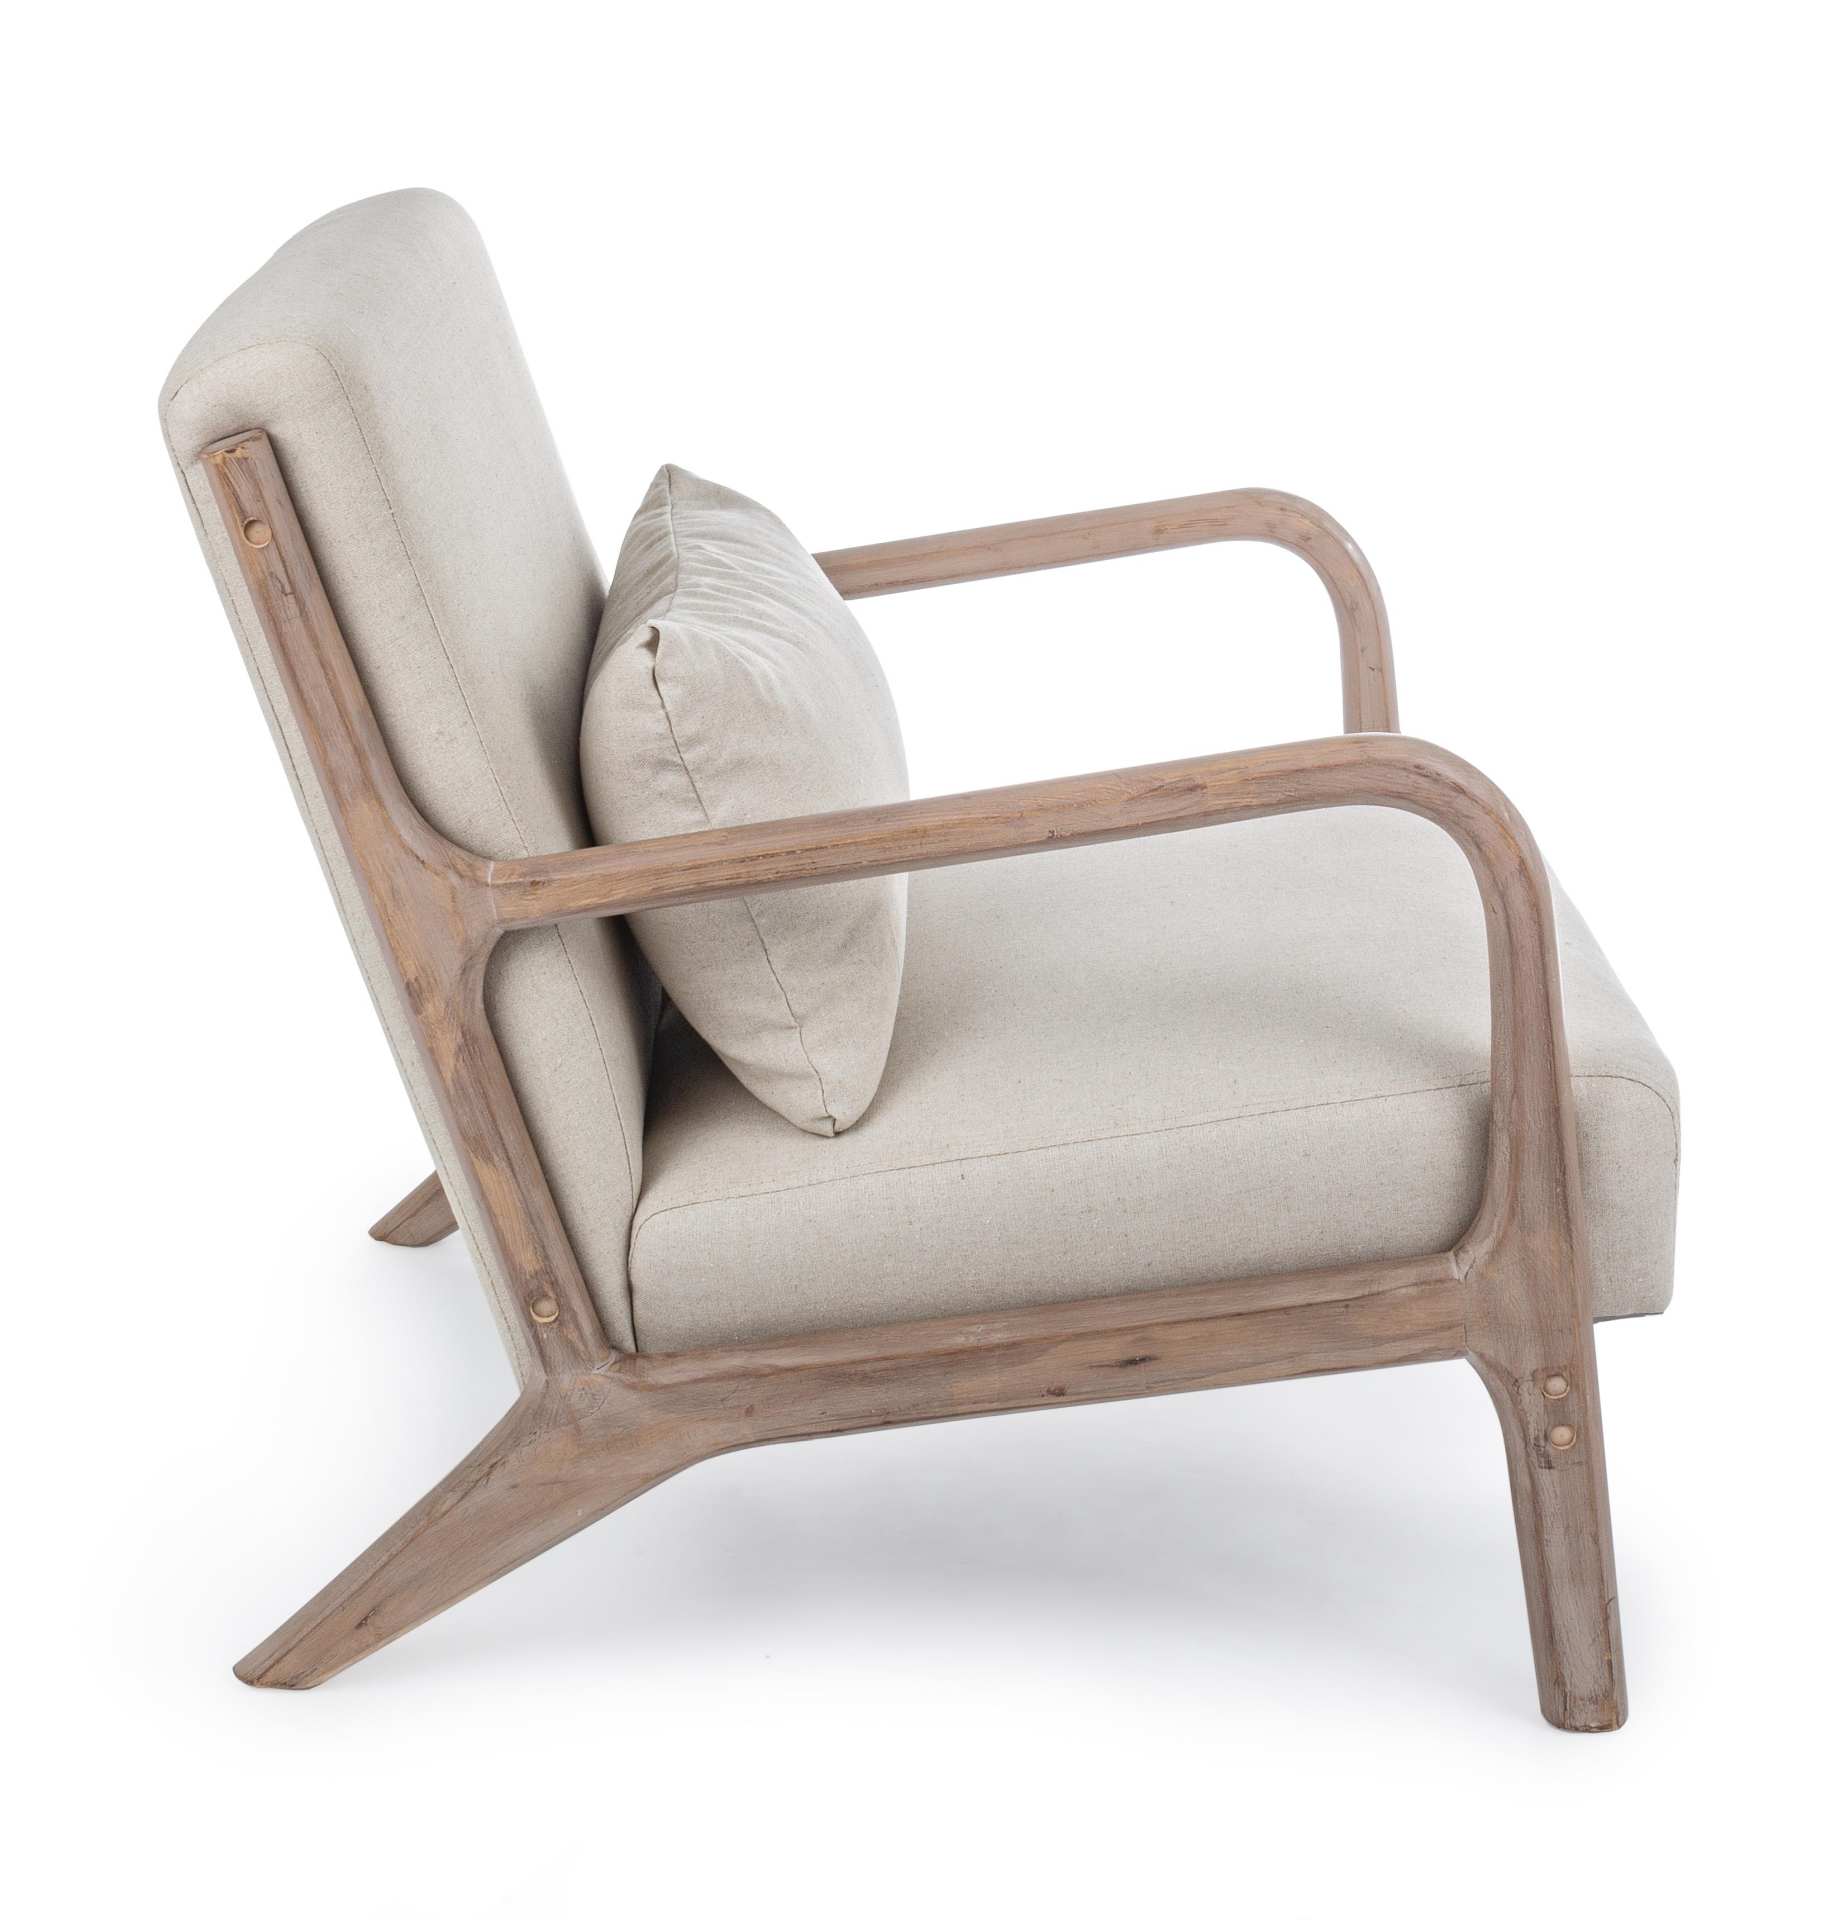 Der Sessel Ancilla überzeugt mit seinem klassischen Design. Gefertigt wurde er aus Stoff, welcher einen Beige Farbton besitzt. Das Gestell ist aus Kautschukholz und hat eine natürliche Farbe. Der Sessel besitzt eine Sitzhöhe von 34 cm. Die Breite beträgt 